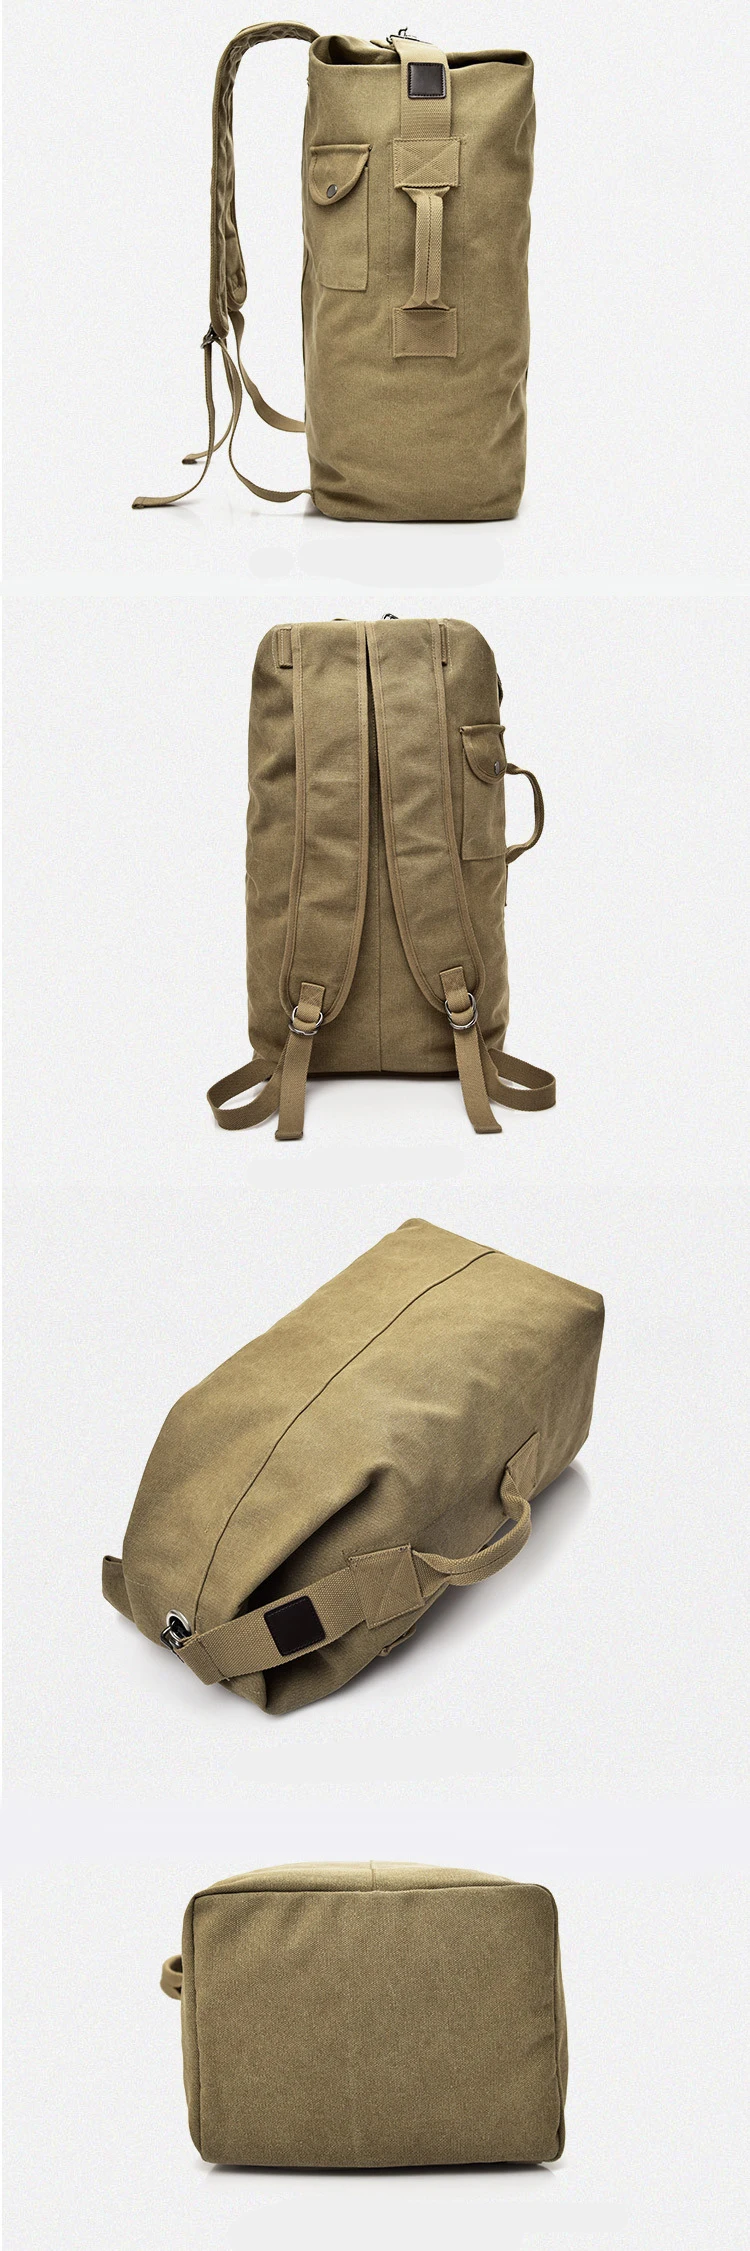 Дорожная сумка для мужчин и женщин с большой вместительностью, военный тактический рюкзак, армейские сумки, Брезентовая сумка на плечо LA760